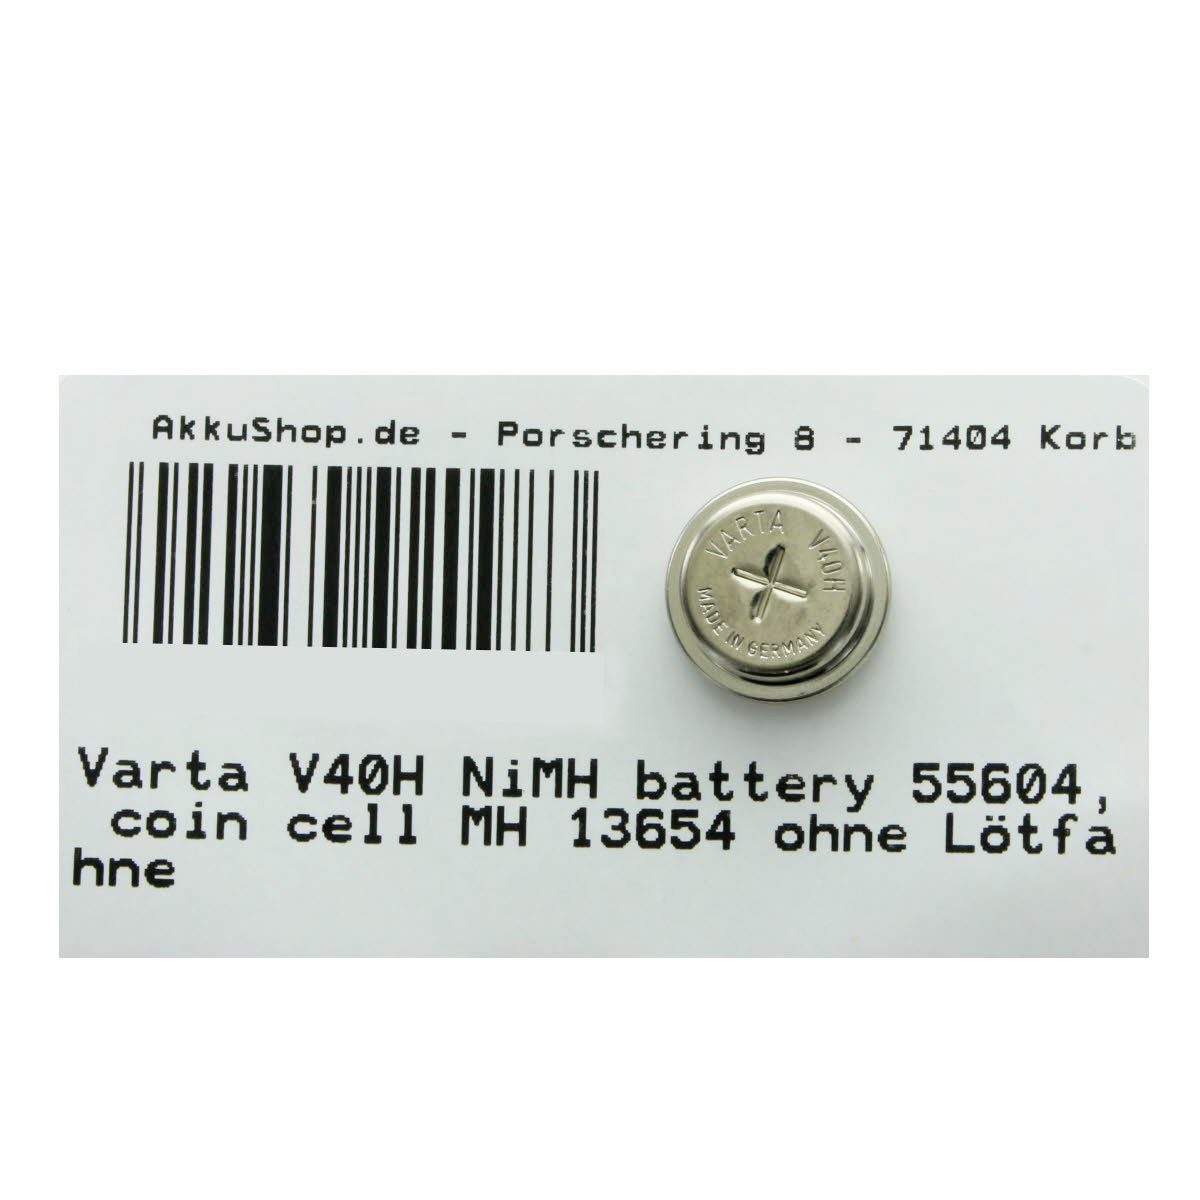 MH 13654, 55604, NiMH Stück Knopfzelle, V40H 4 V) Varta (1,2 VARTA cell coin battery